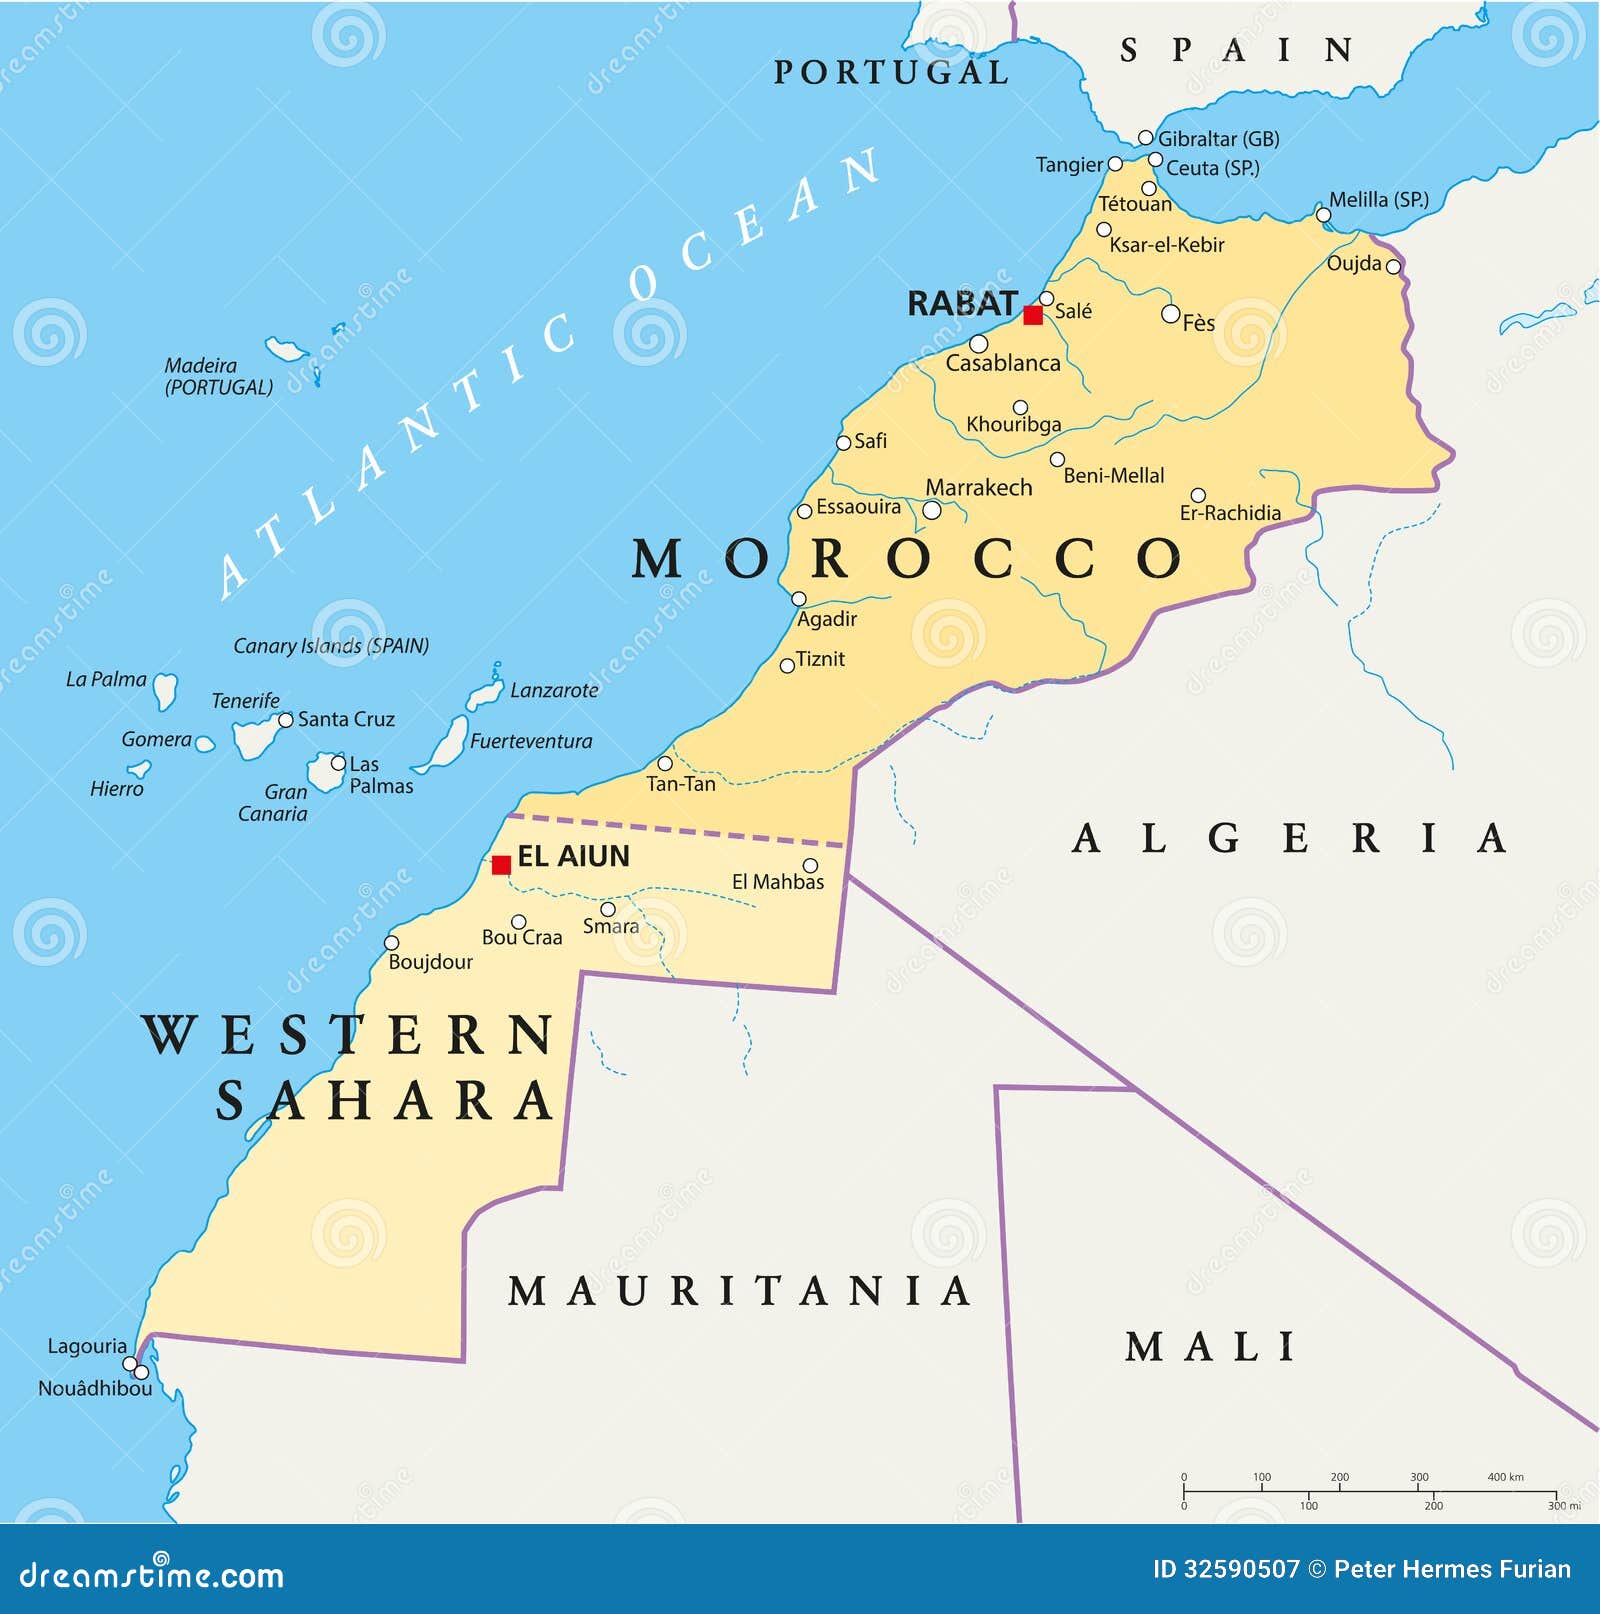 agadir morocco canary islands cape verde map ile ilgili görsel sonucu